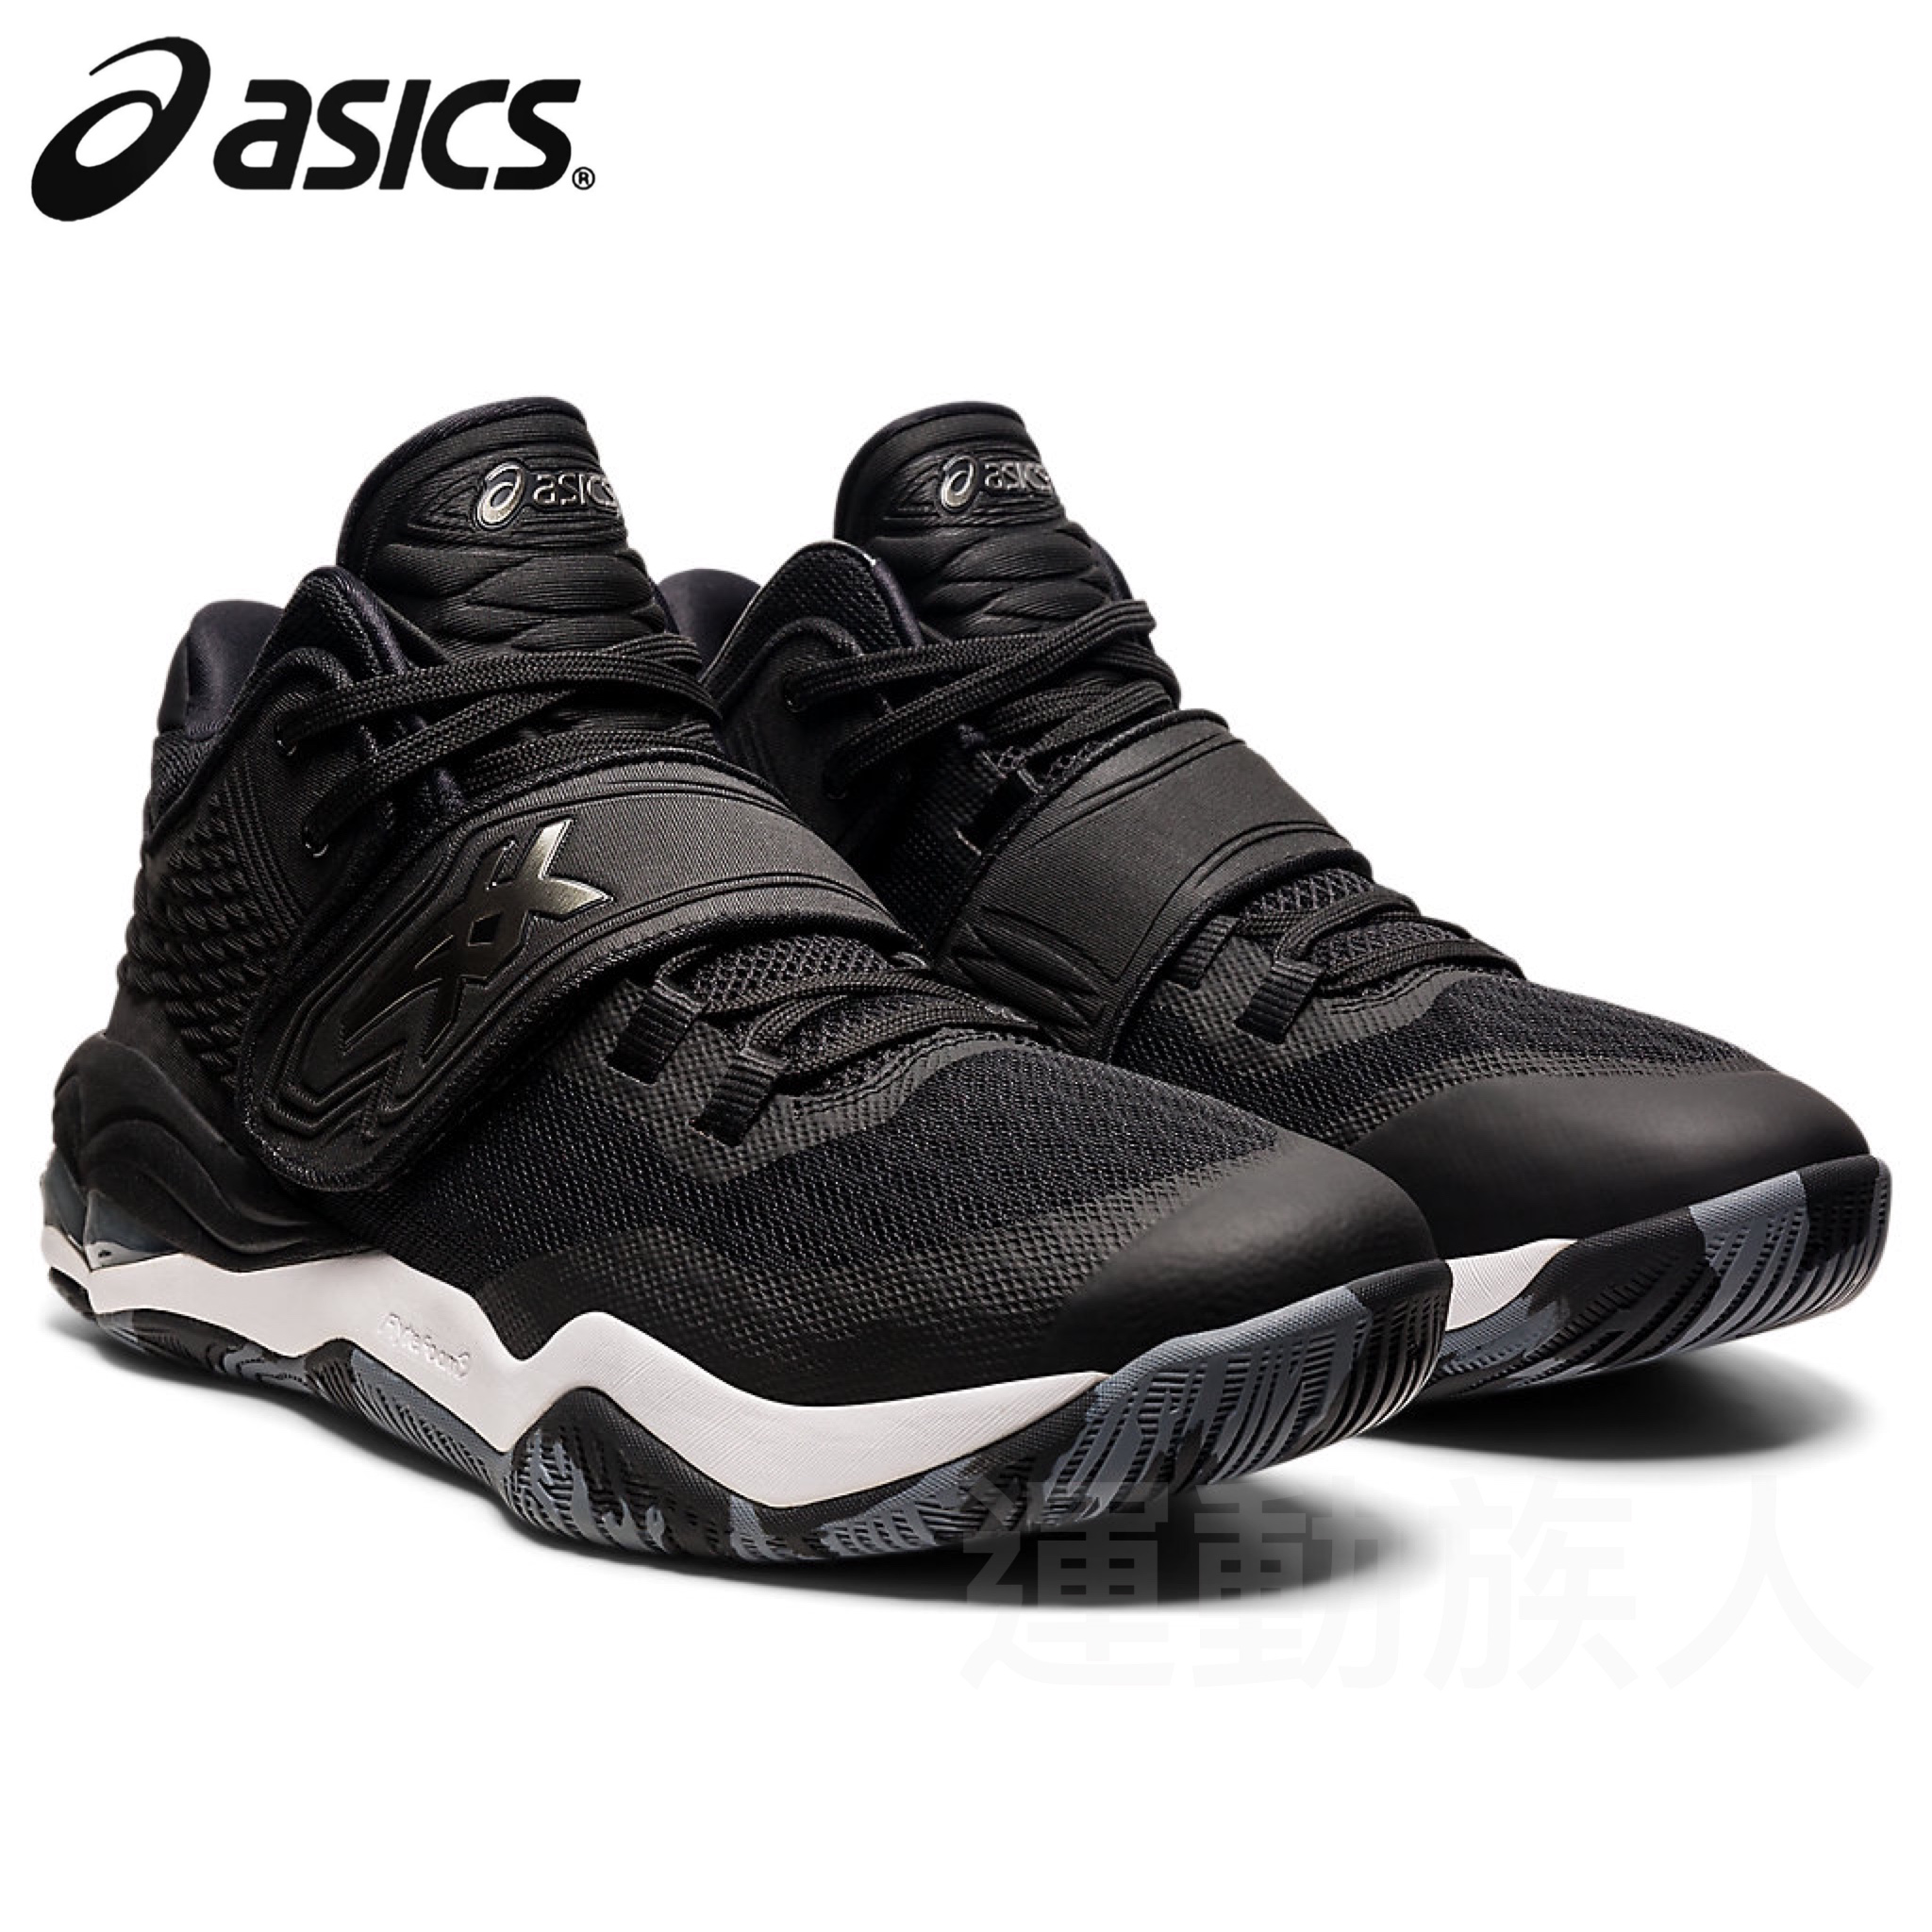 💥日本直送】Asics INVADE NOVA 男士籃球鞋運動鞋24.0 - 32.0 cm 黑色